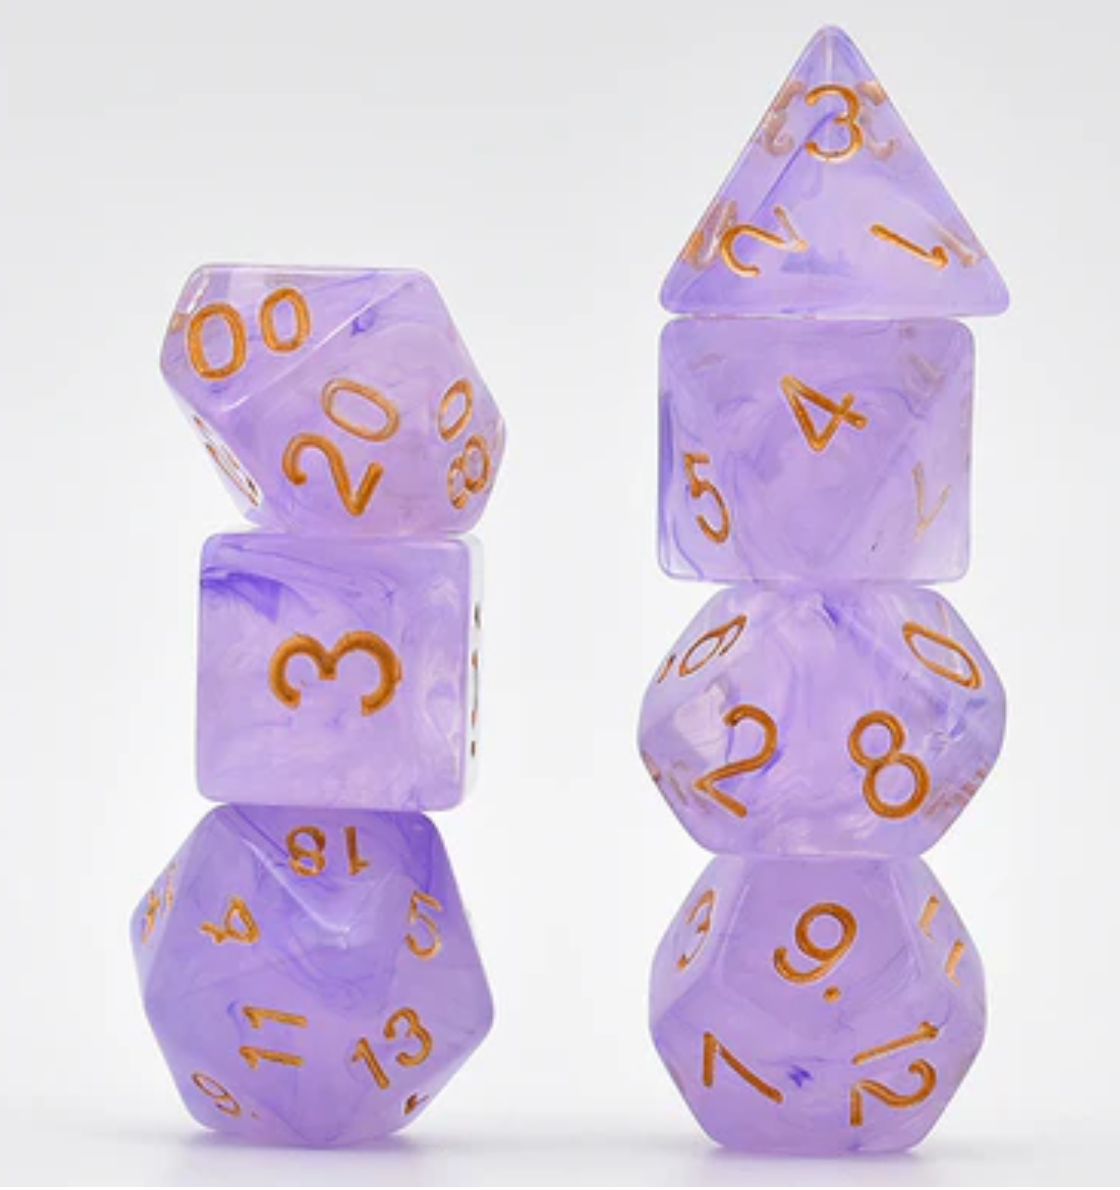 Foam Brain - Purple Silk Translucent Dice RPG Dice Set